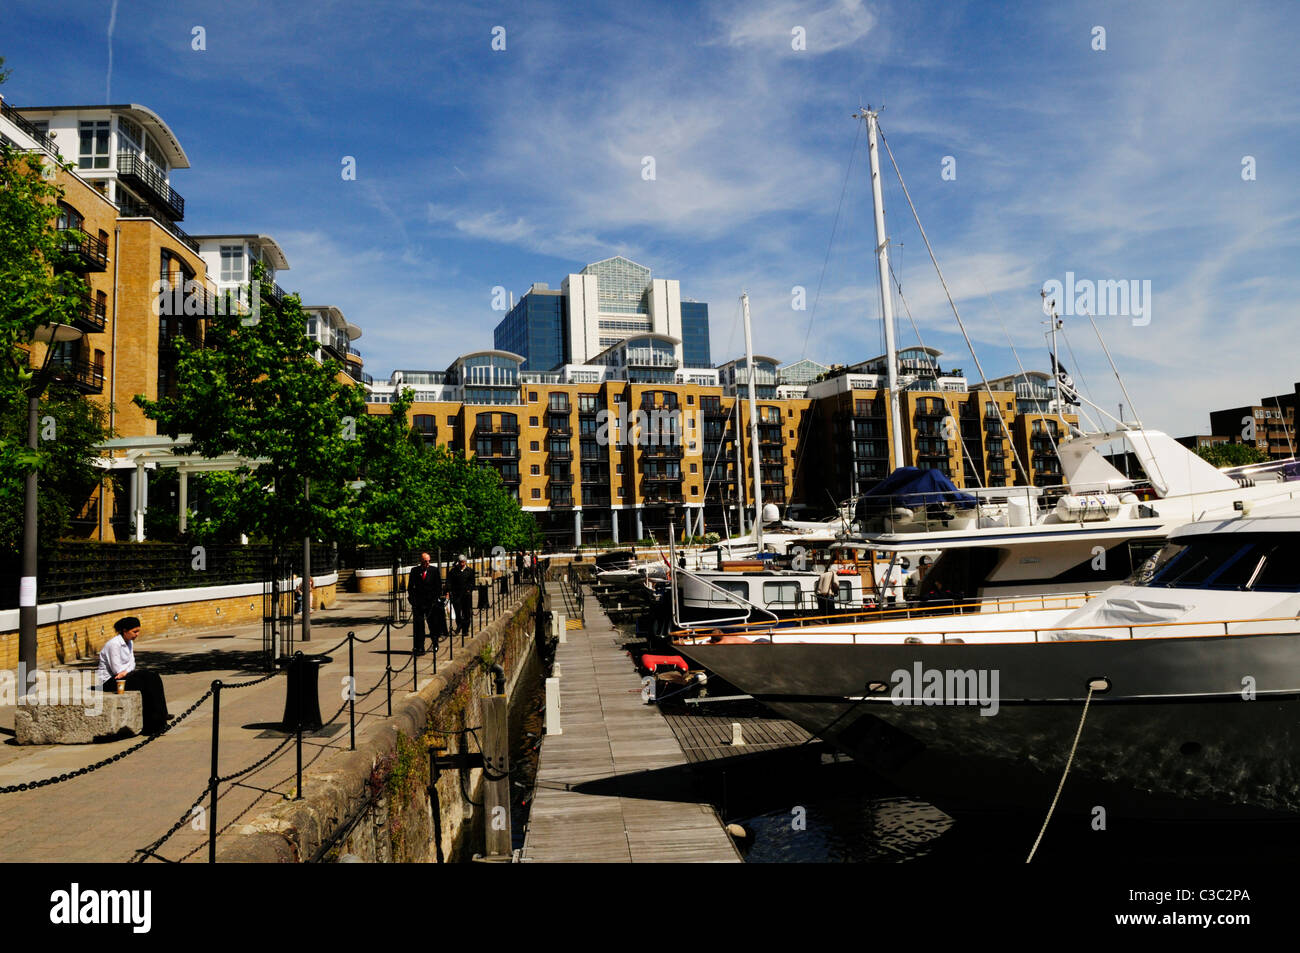 St Katharine's Dock Marina and Apartments, London, England, UK Stock Photo